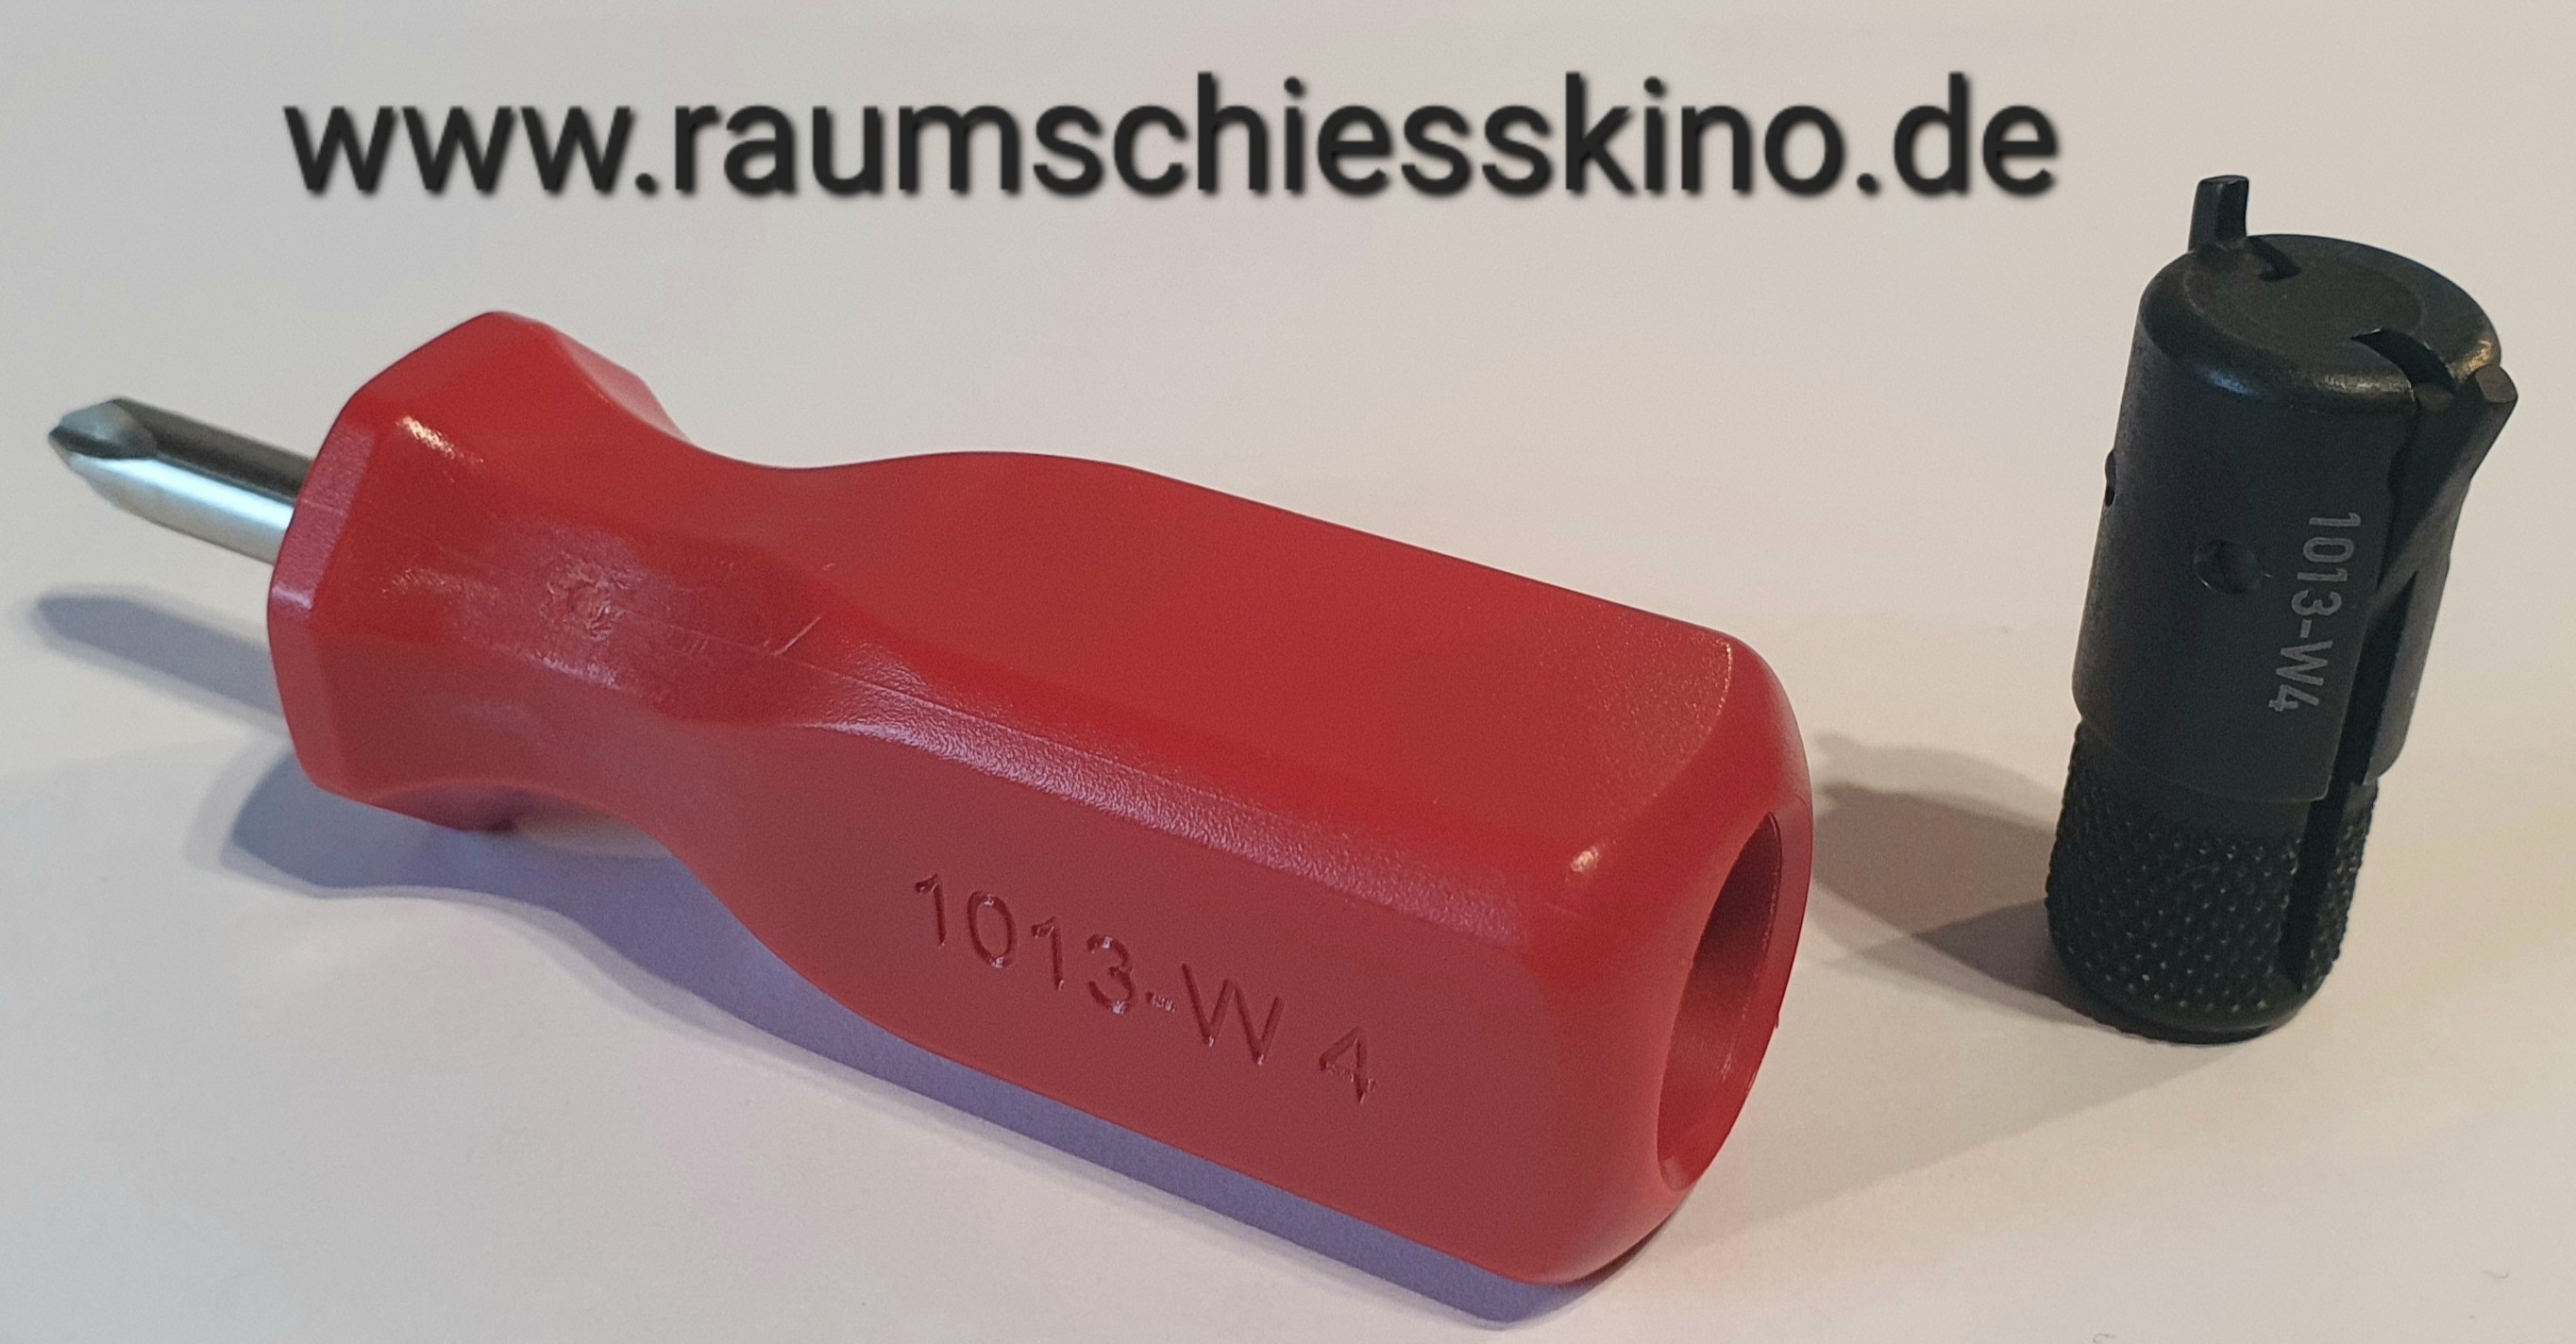 HK Visiersteller Werkzeug 1013-W4 im roten Schraubendreher PH2